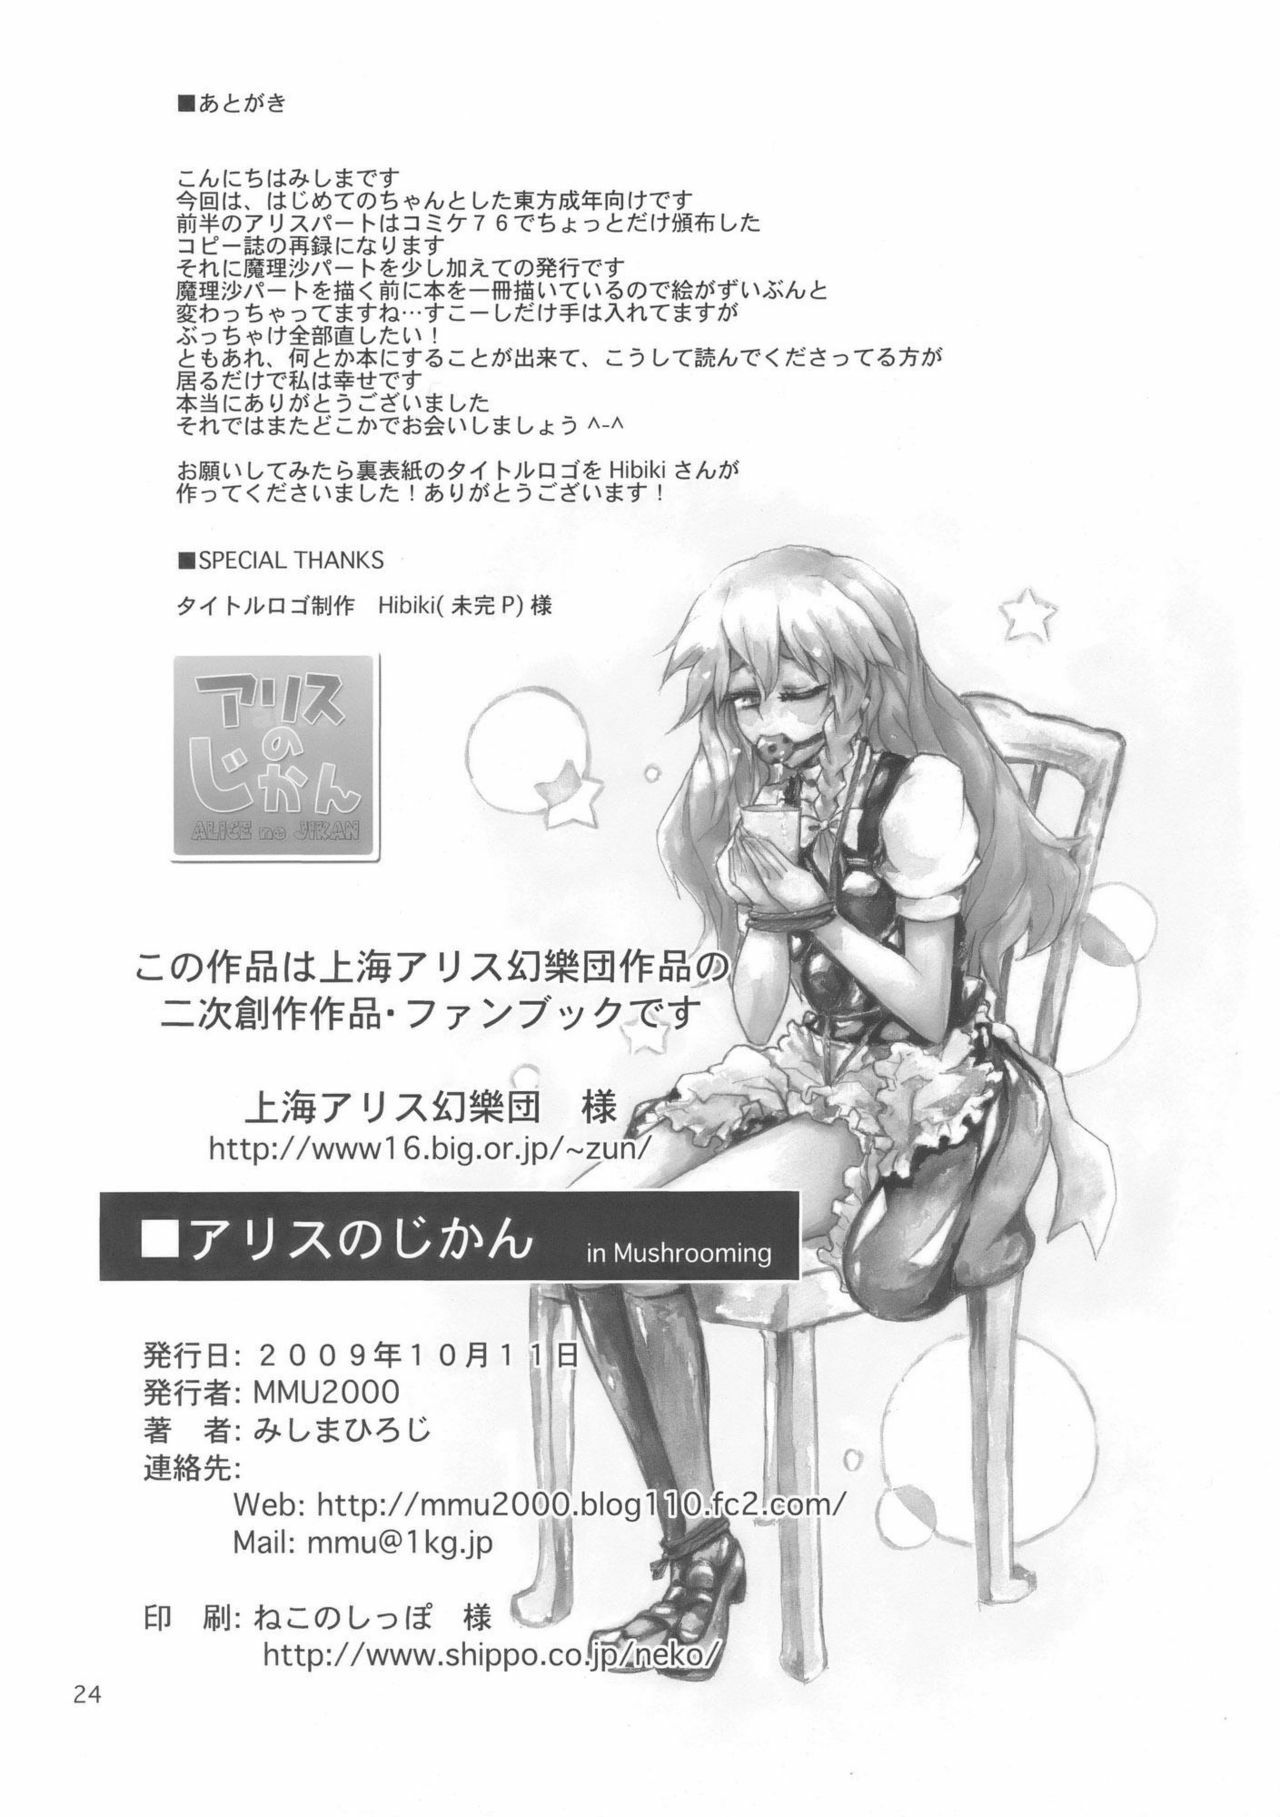 (Kouroumu 5) [MMU2000 (Mishima Hiroji)] Alice no Jikan (Touhou Project) page 26 full